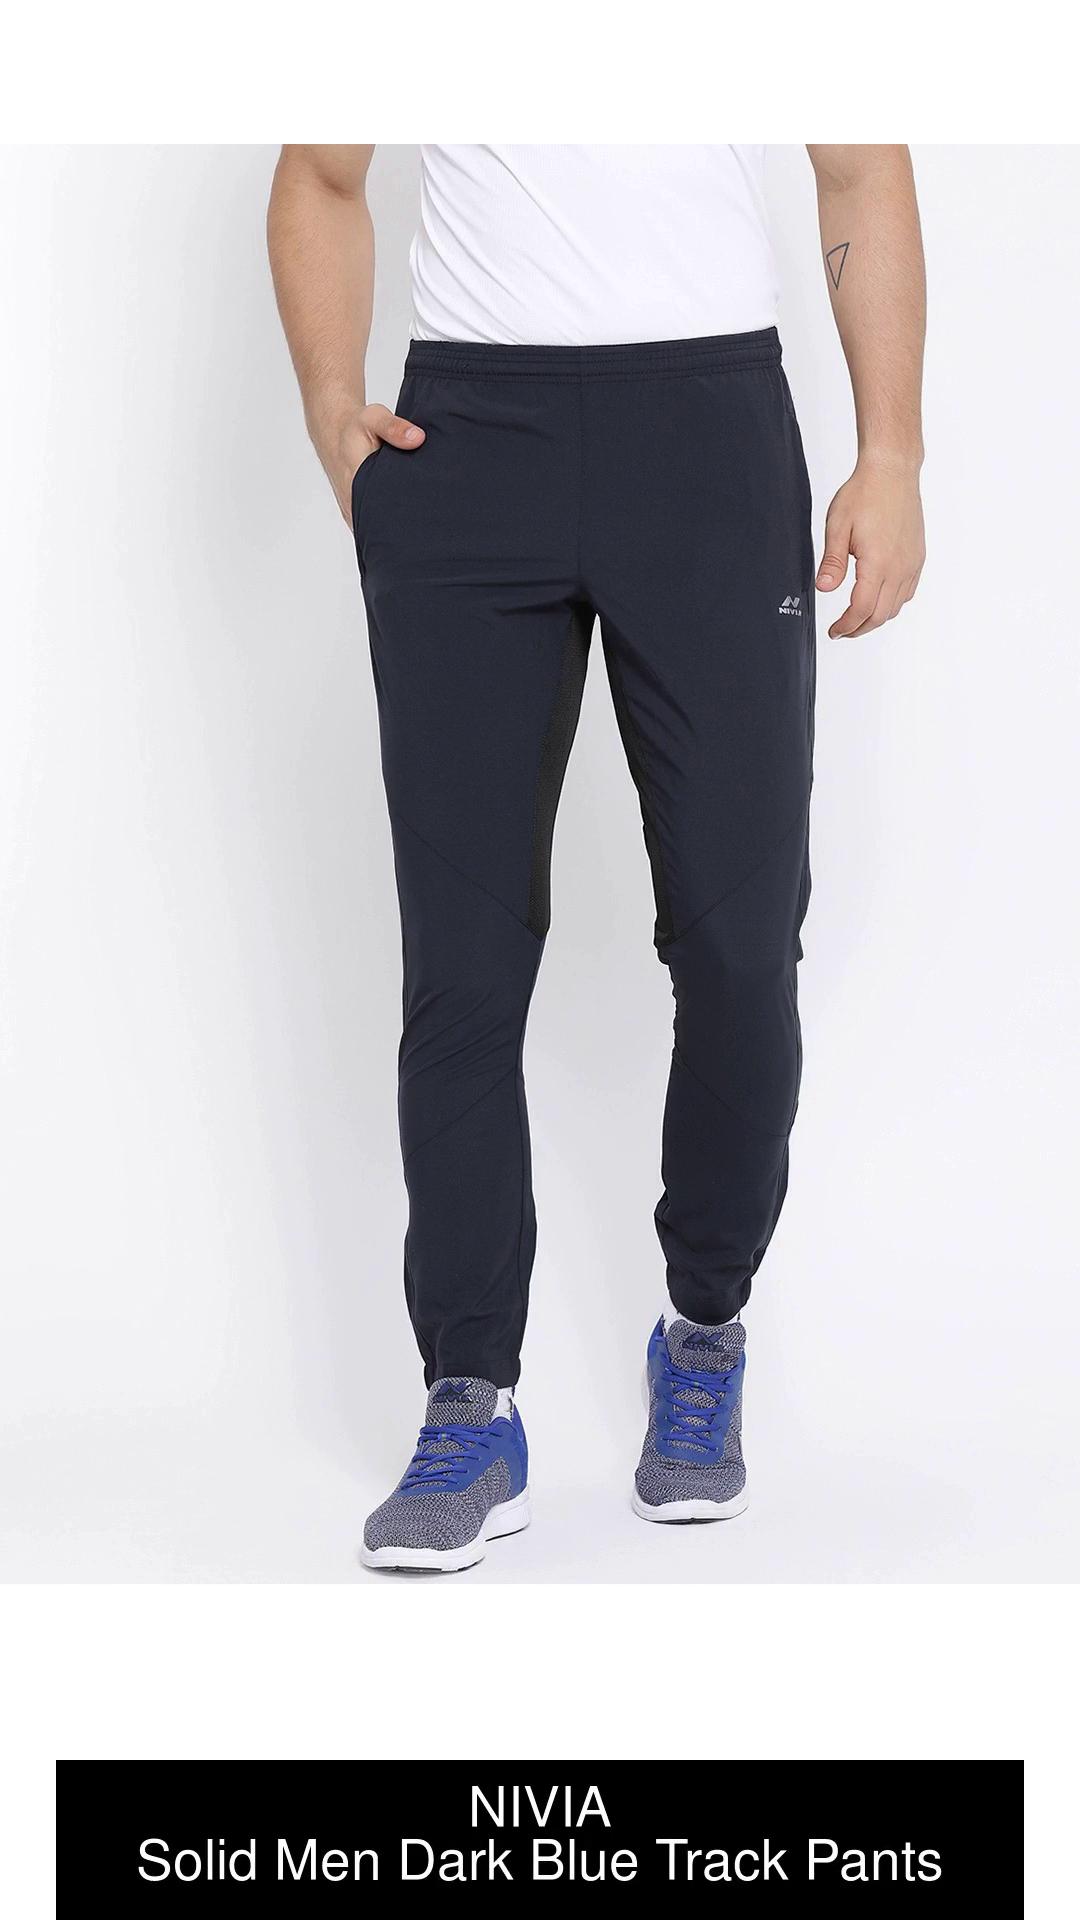 Pro Ethic Men's Lycra Track Pants Set Blue Pack of 1 #J-104